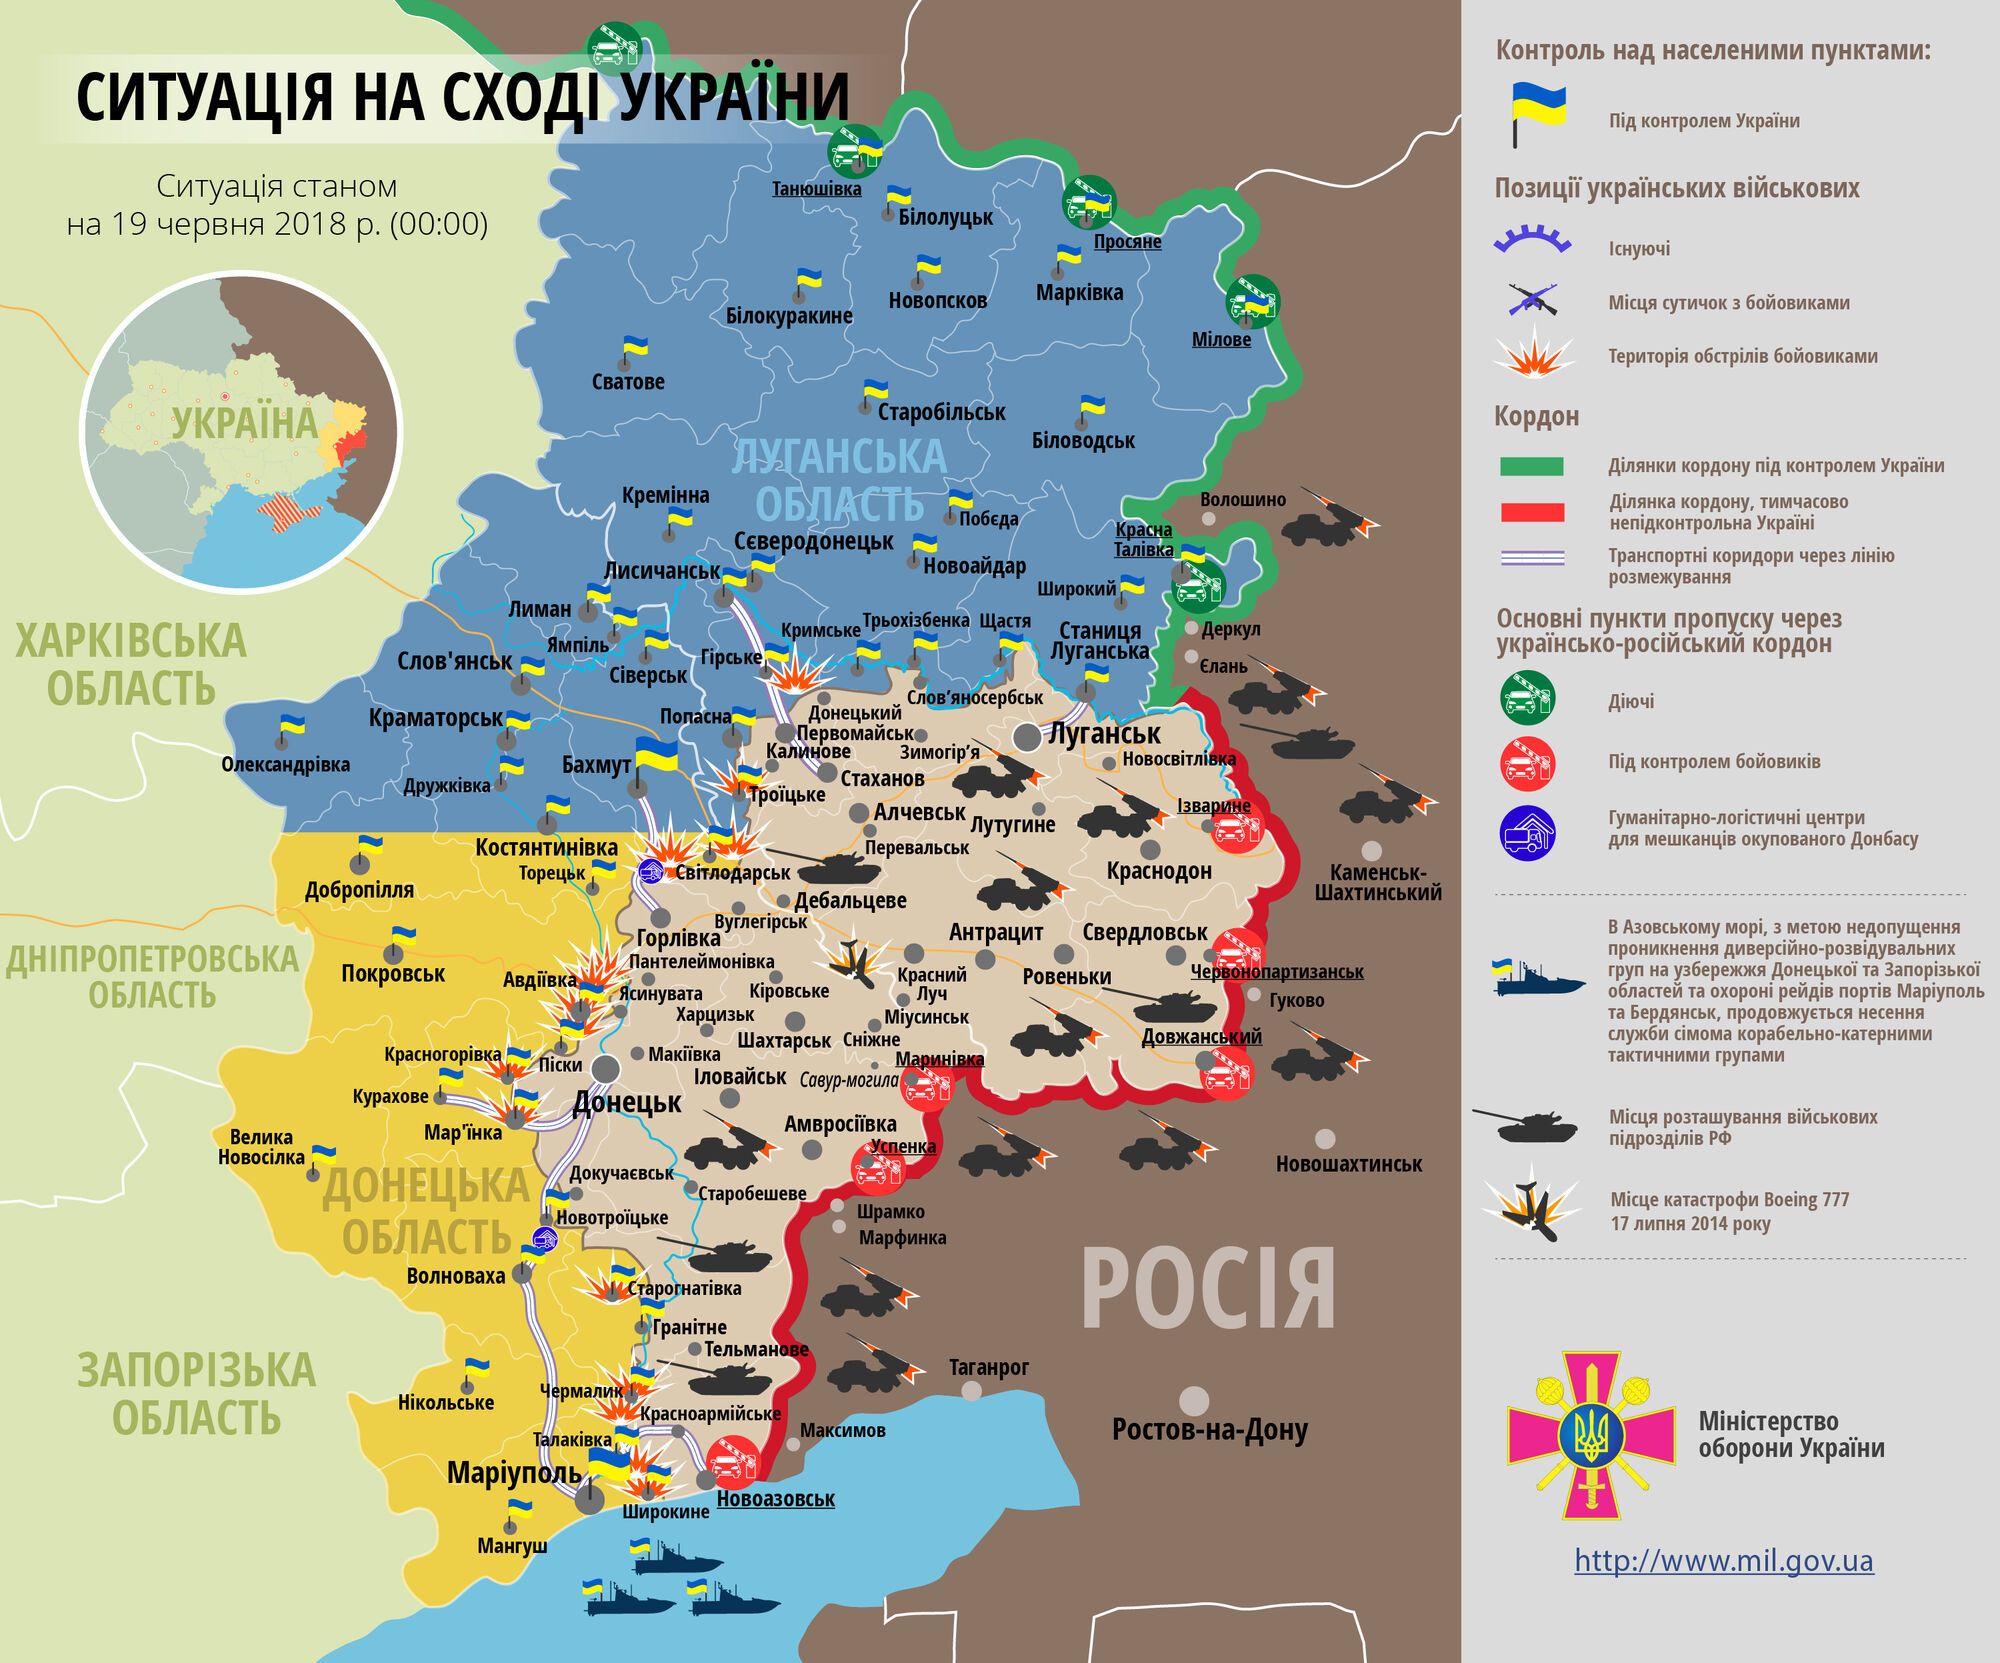 Продвинулись вглубь: ВСУ заняли новые позиции на Донбассе. Появилось видео